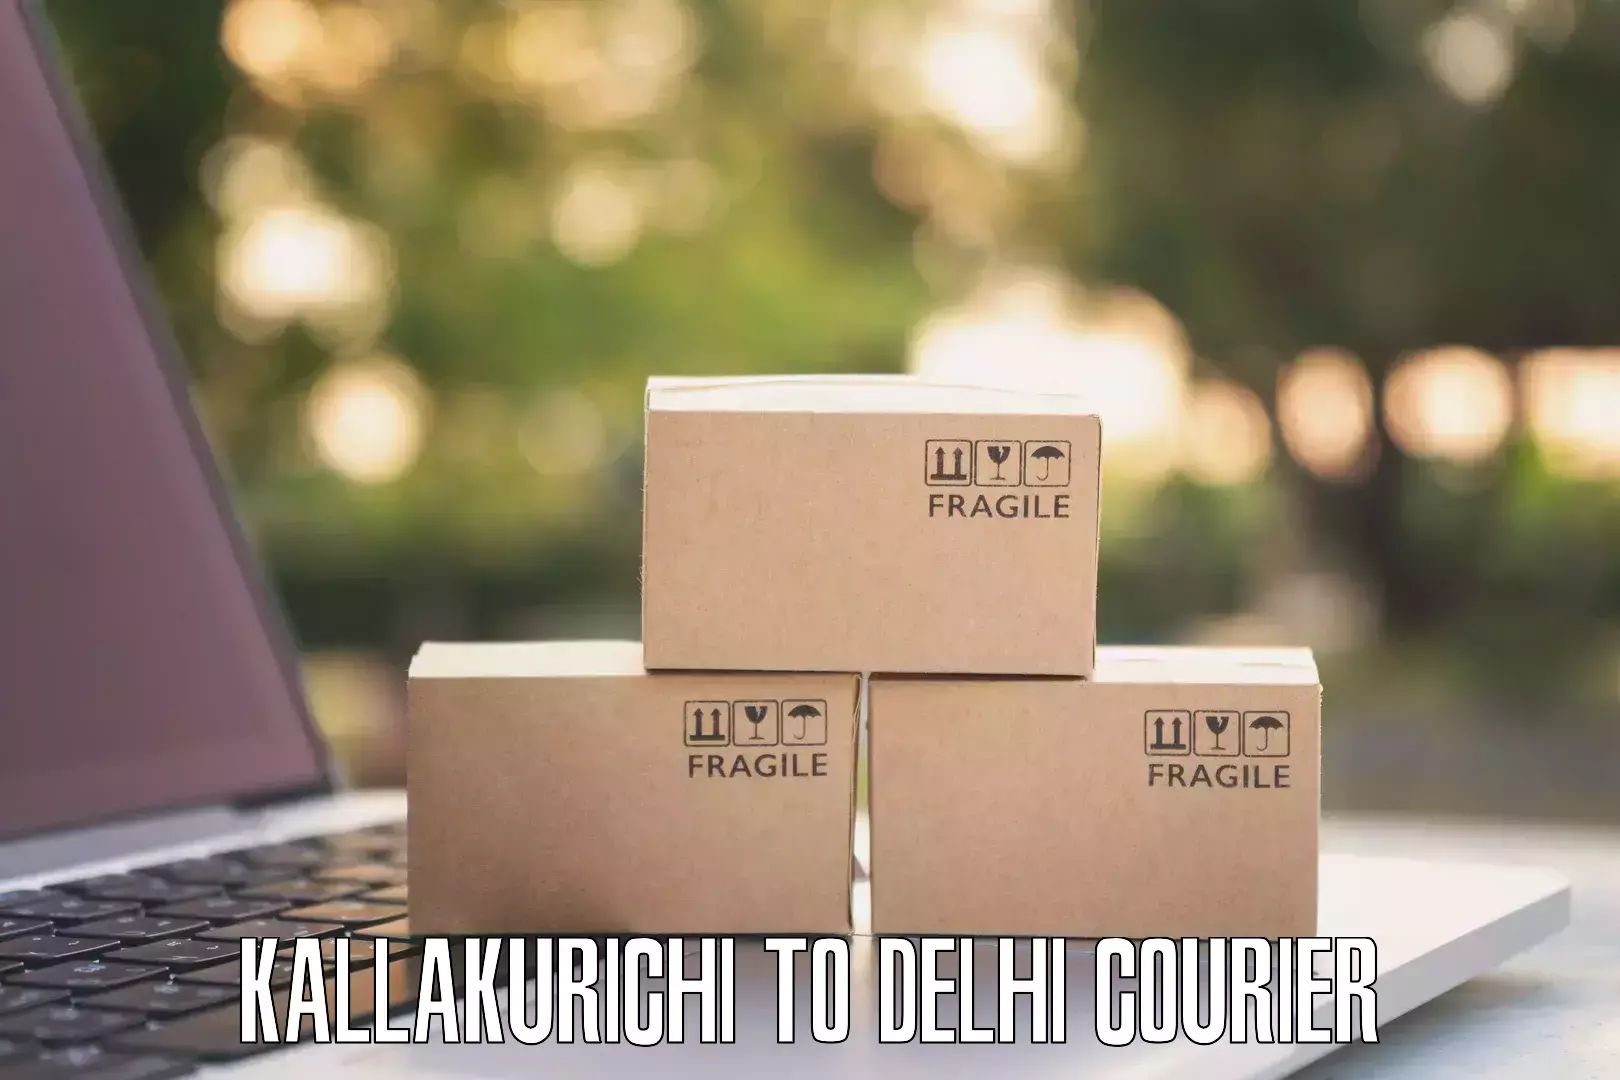 Efficient parcel service Kallakurichi to Delhi Technological University DTU